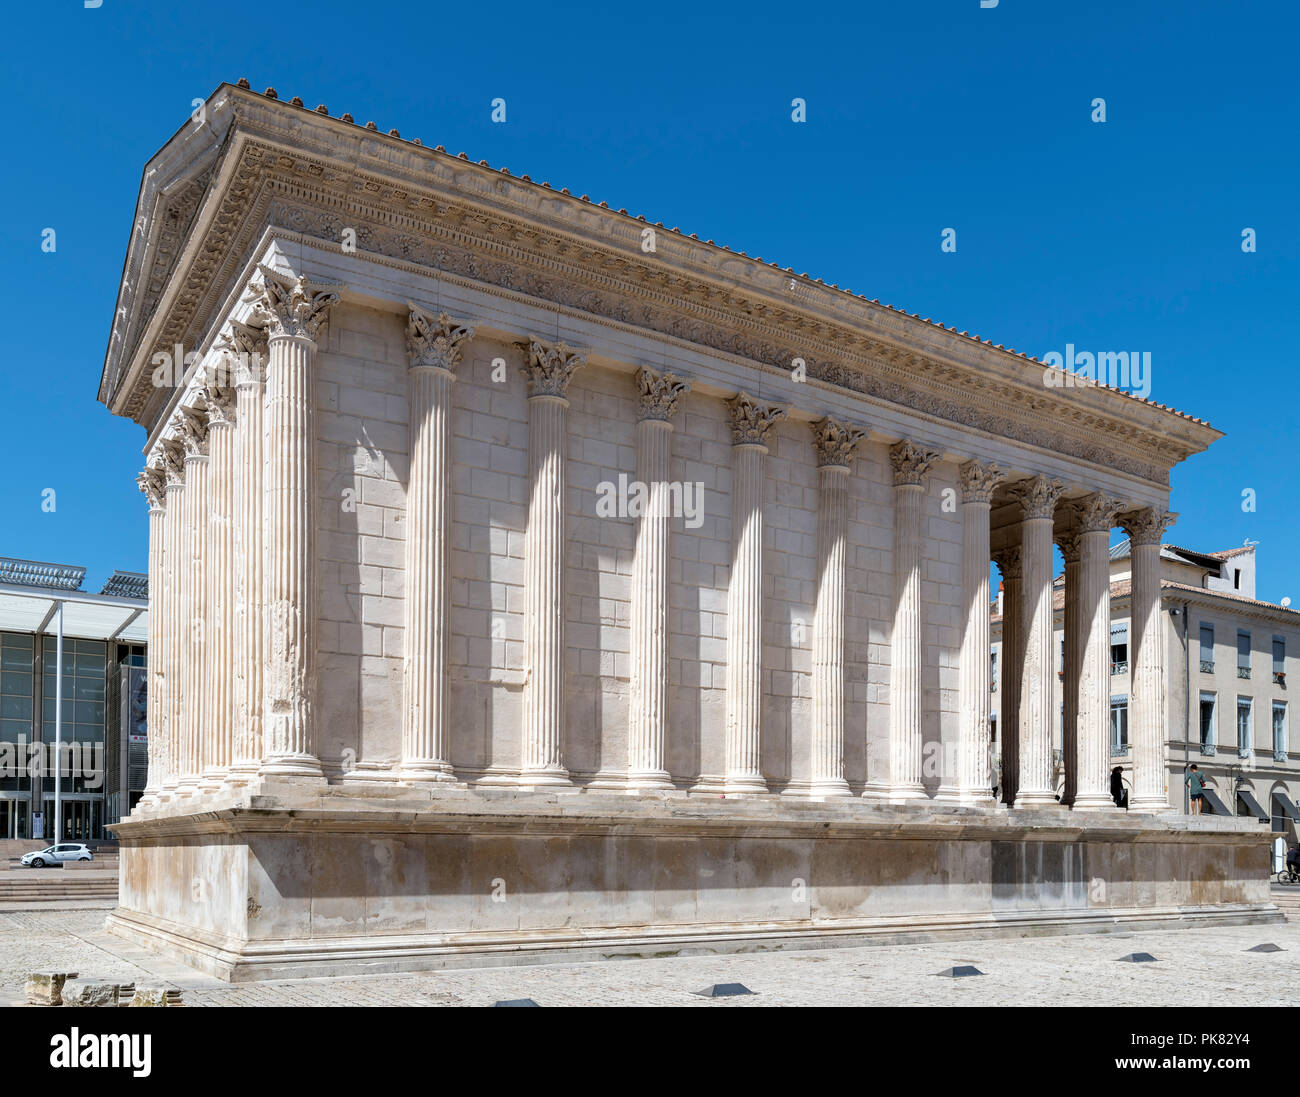 Das Maison Carree römischen Tempel, Place de la Maison Carrée, Nimes, Languedoc, Frankreich Stockfoto